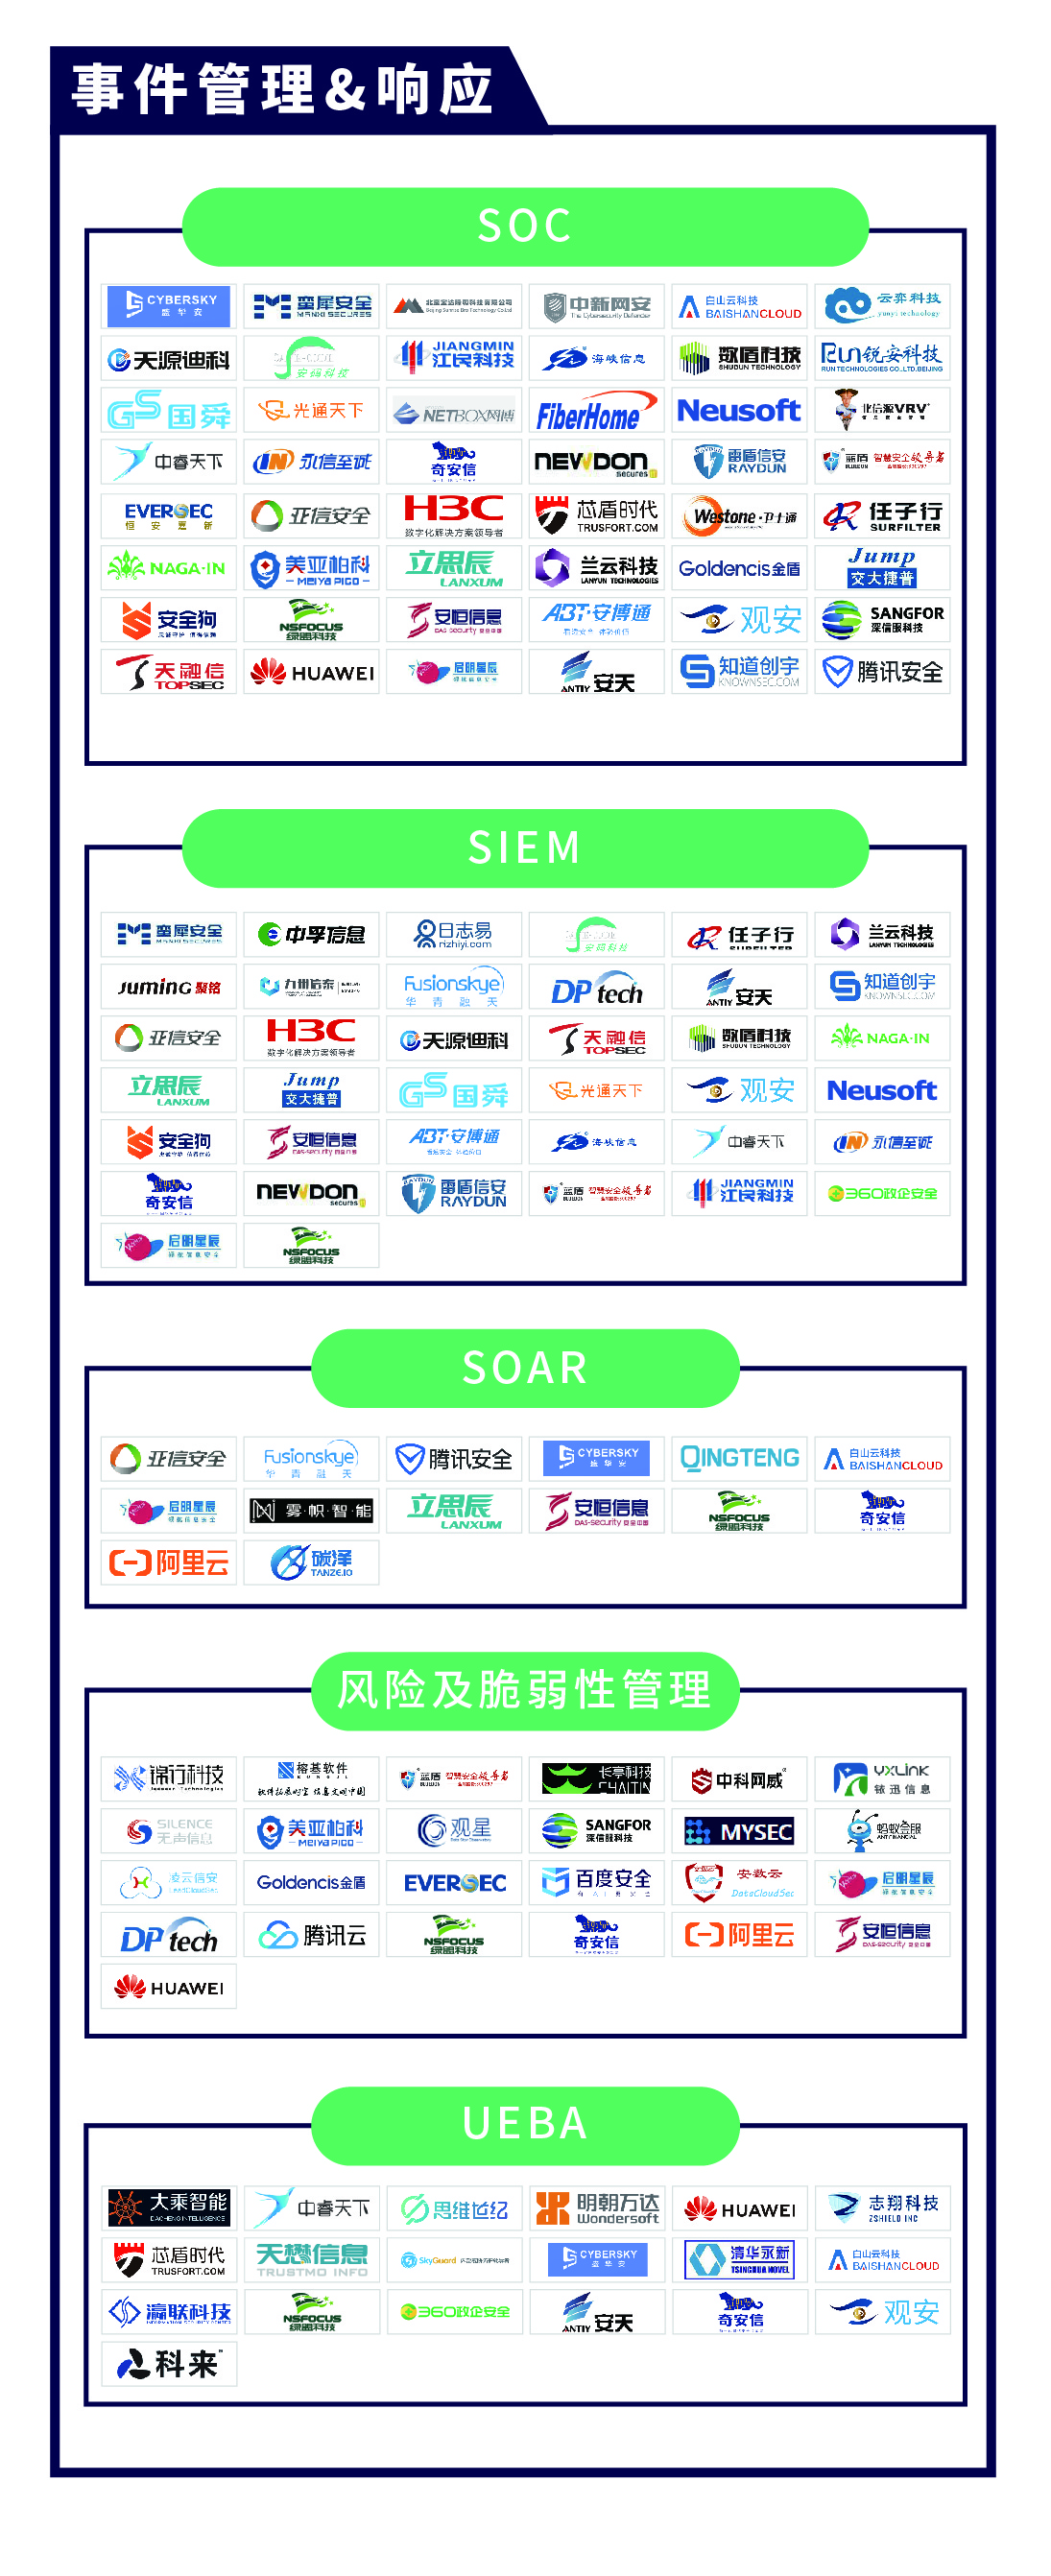 《CCSIP 2020中国网络安全产业全景图》正式发布 | FreeBuf咨询-第15张图片-网盾网络安全培训